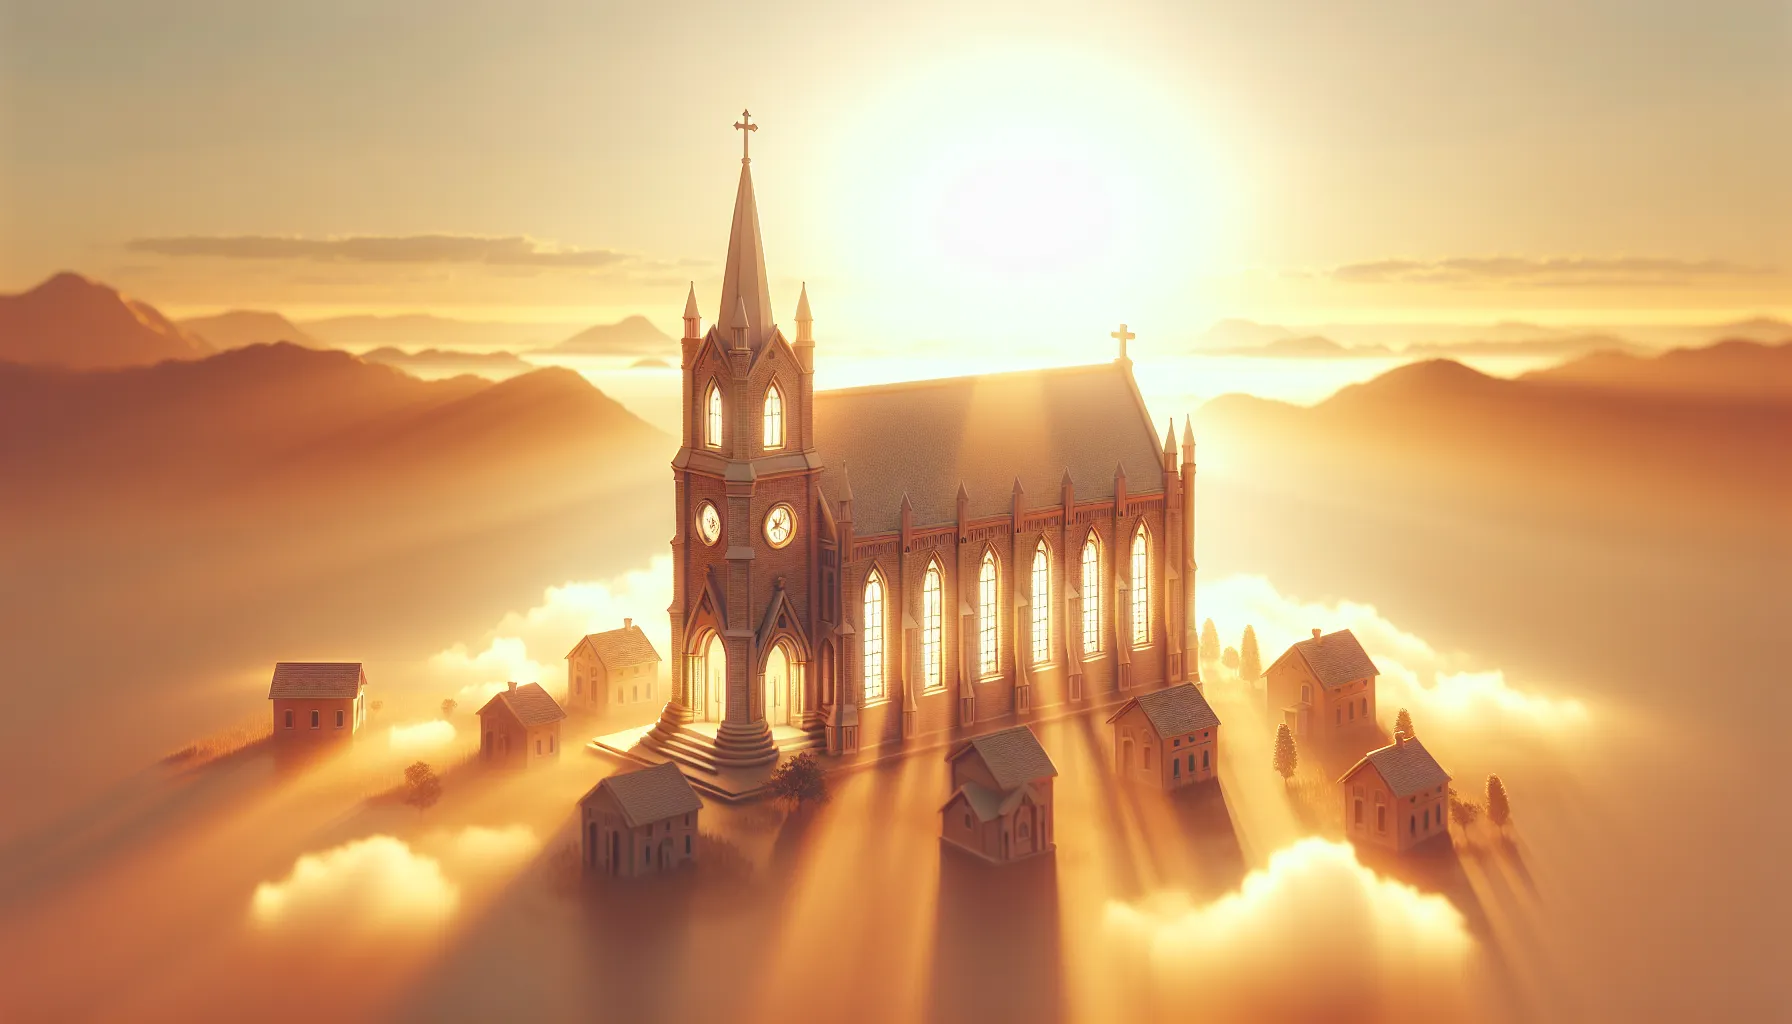 Imagen de una iglesia iluminada por el sol